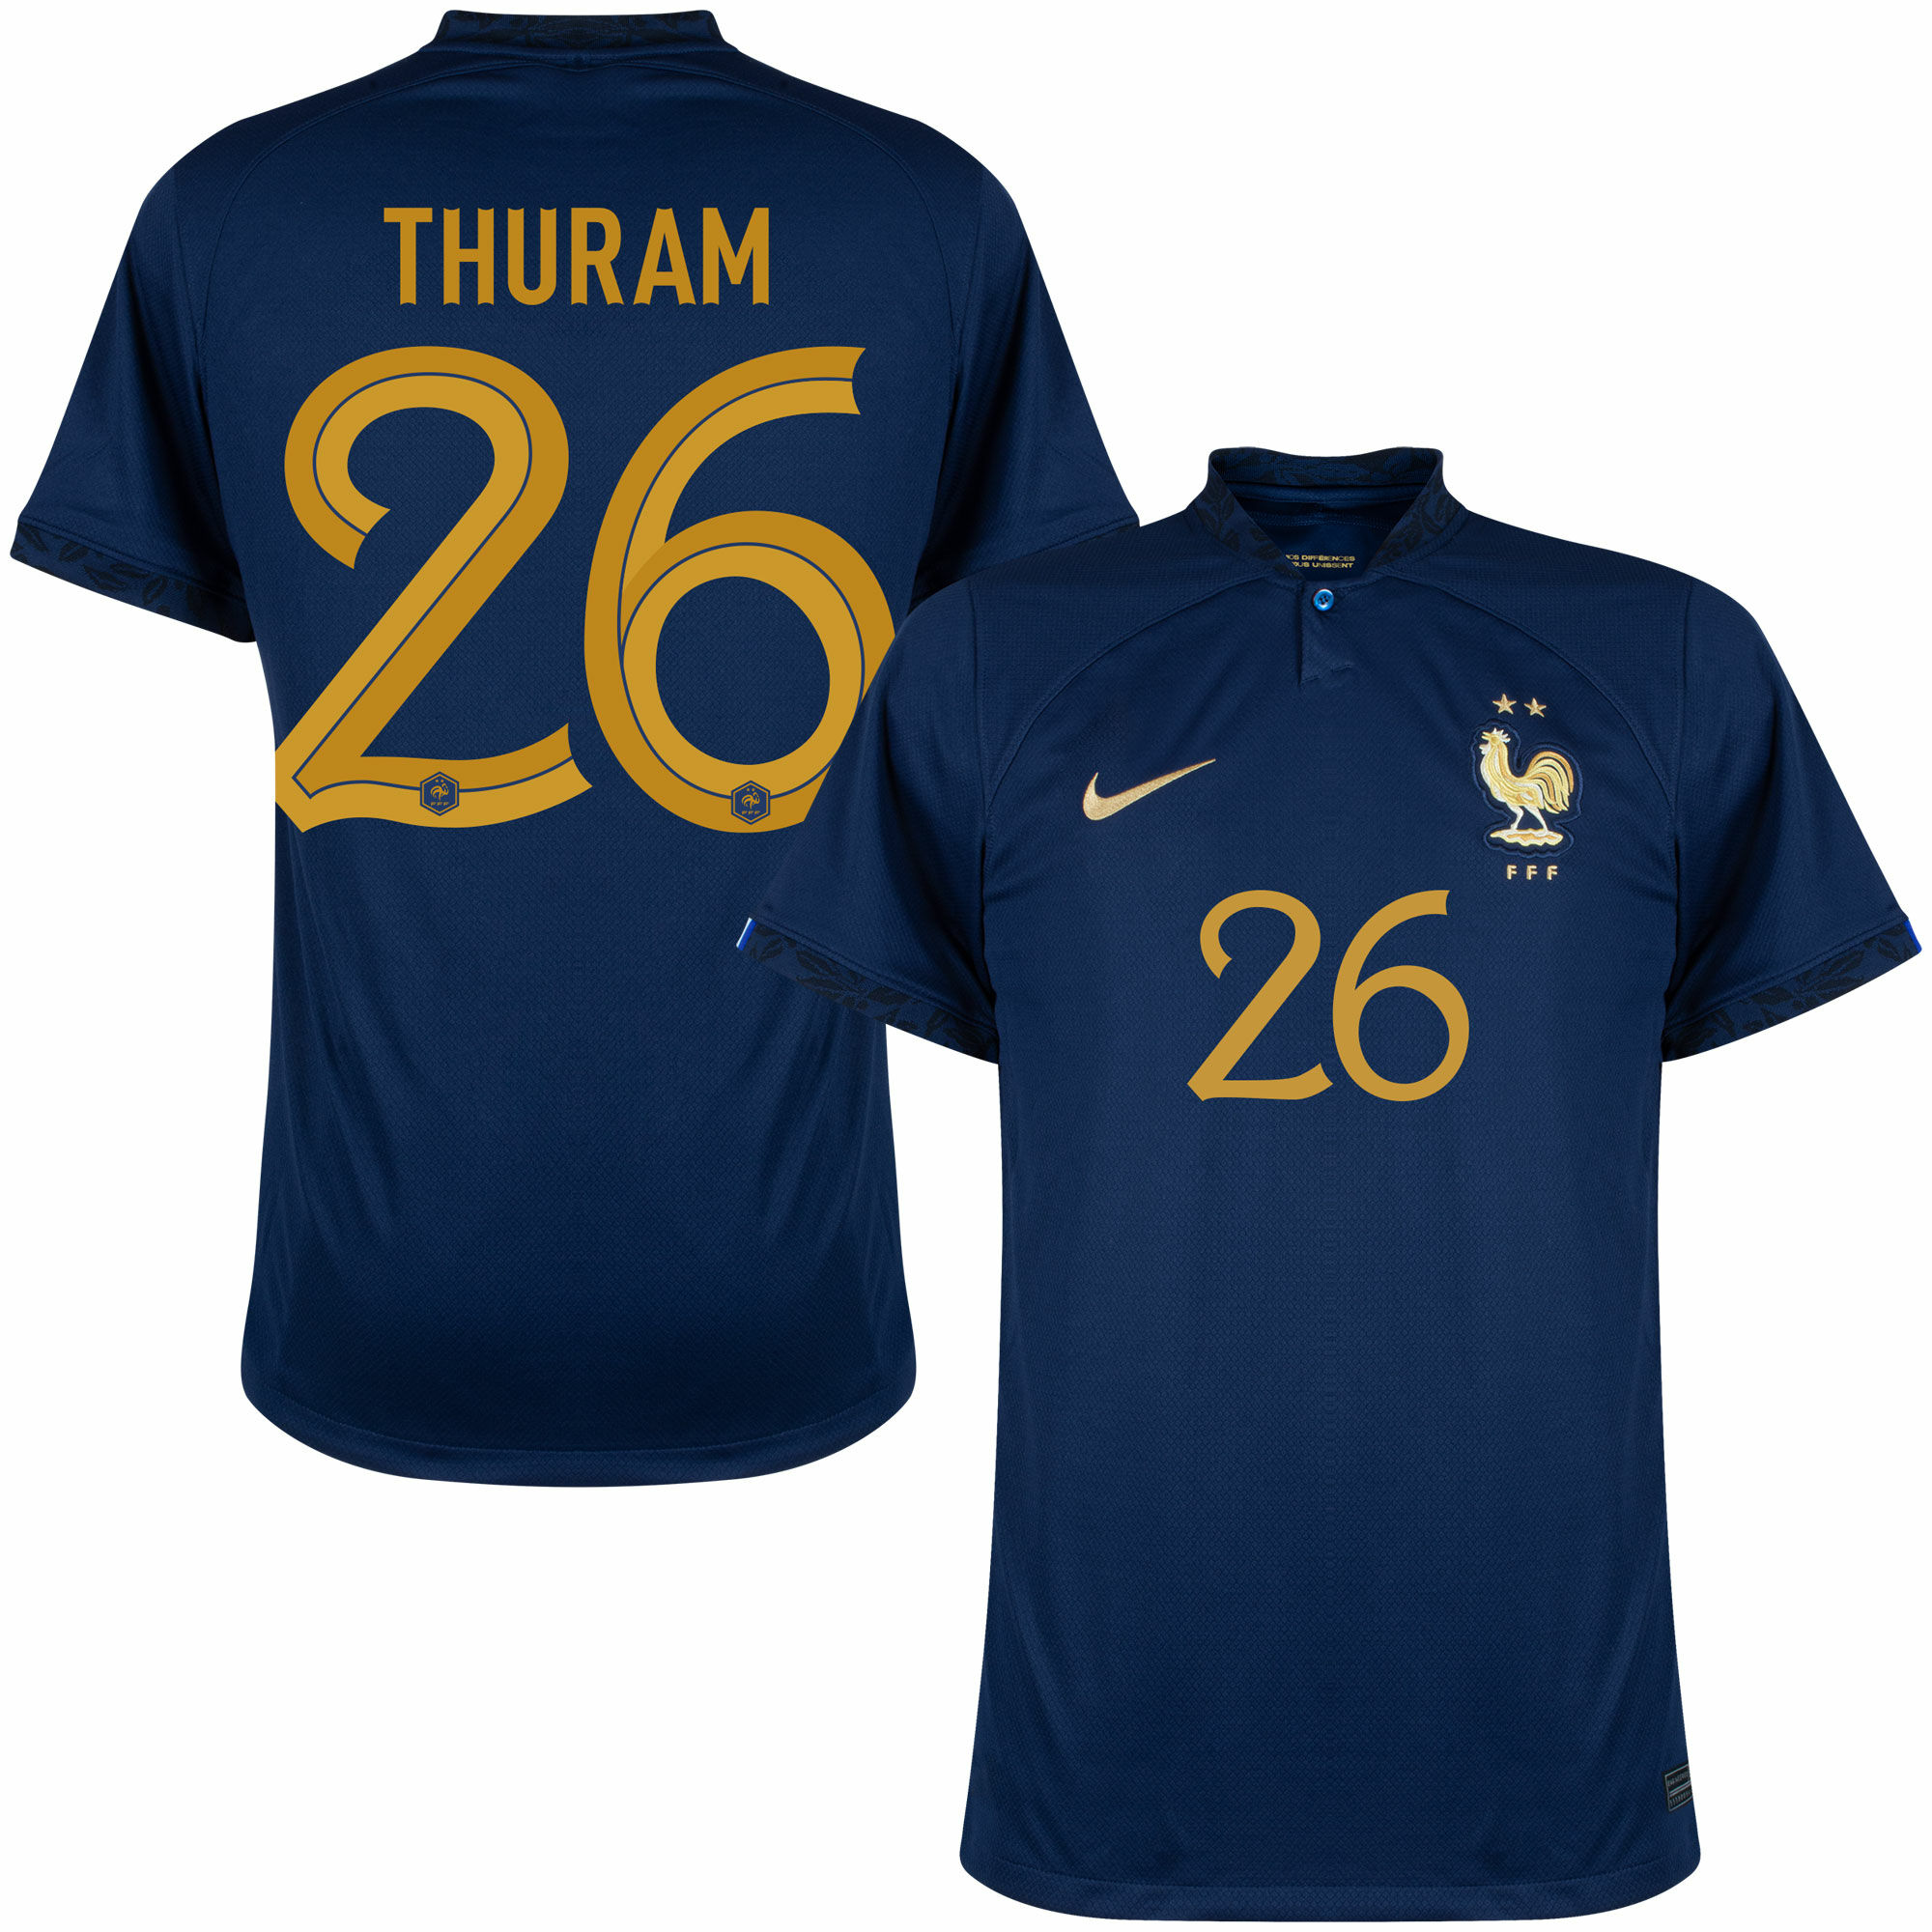 Francie - Dres fotbalový - oficiální potisk, Marcus Thuram, domácí, sezóna 2022/23, číslo 26, modrý